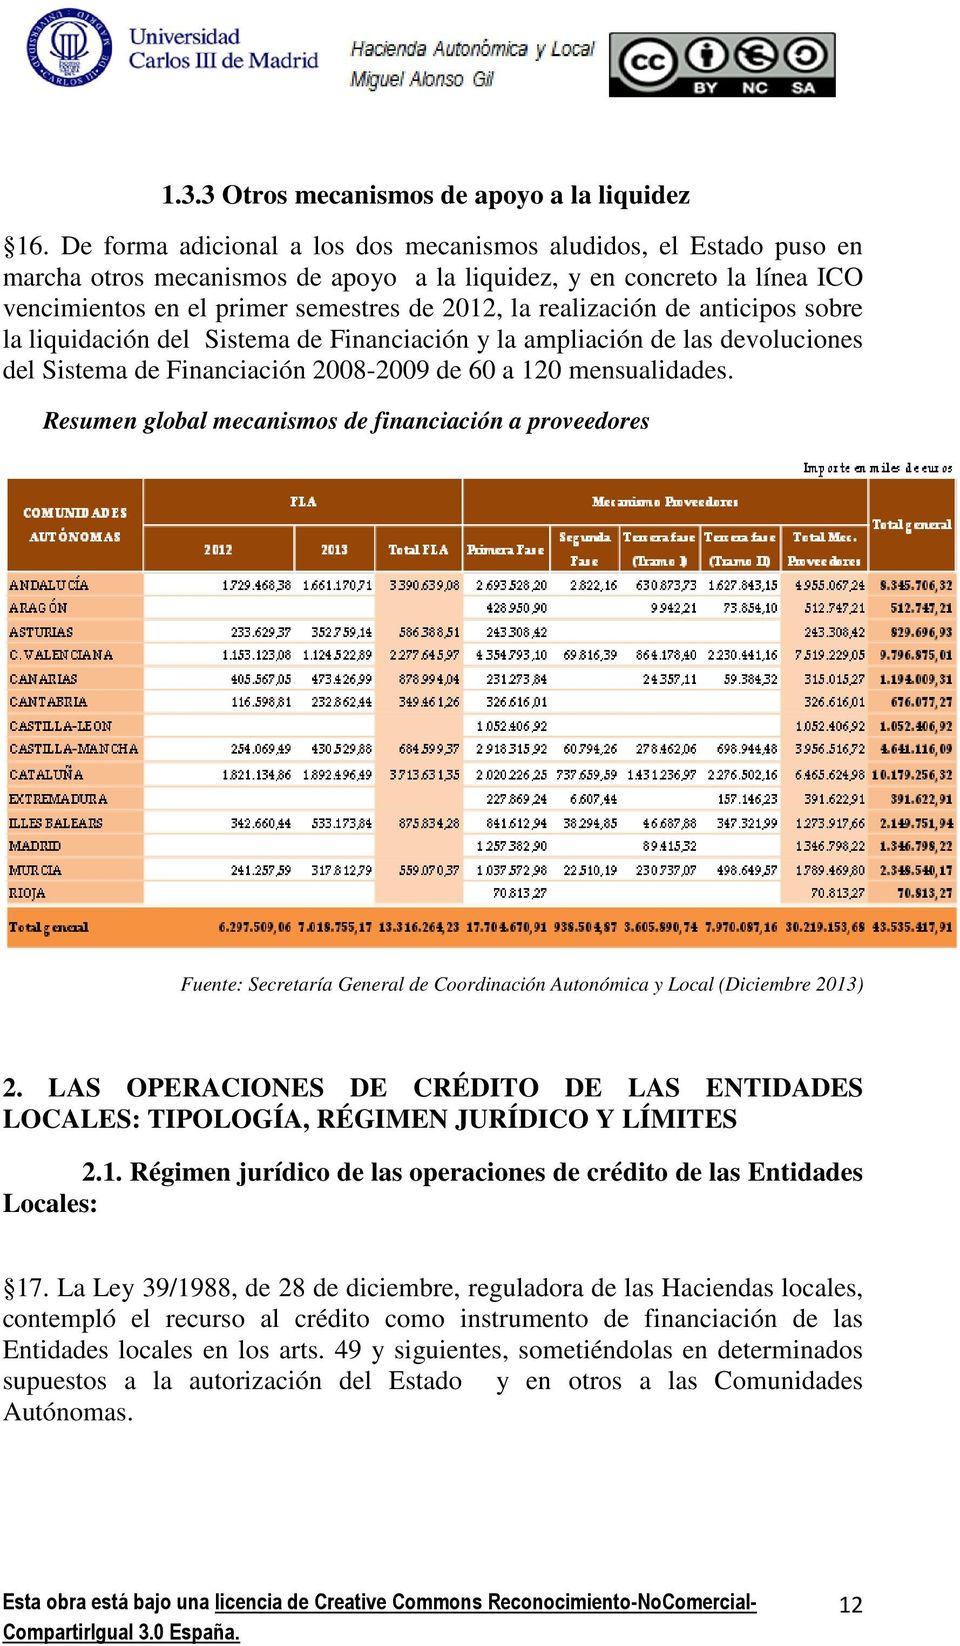 realización de anticipos sobre la liquidación del Sistema de Financiación y la ampliación de las devoluciones del Sistema de Financiación 2008-2009 de 60 a 120 mensualidades.